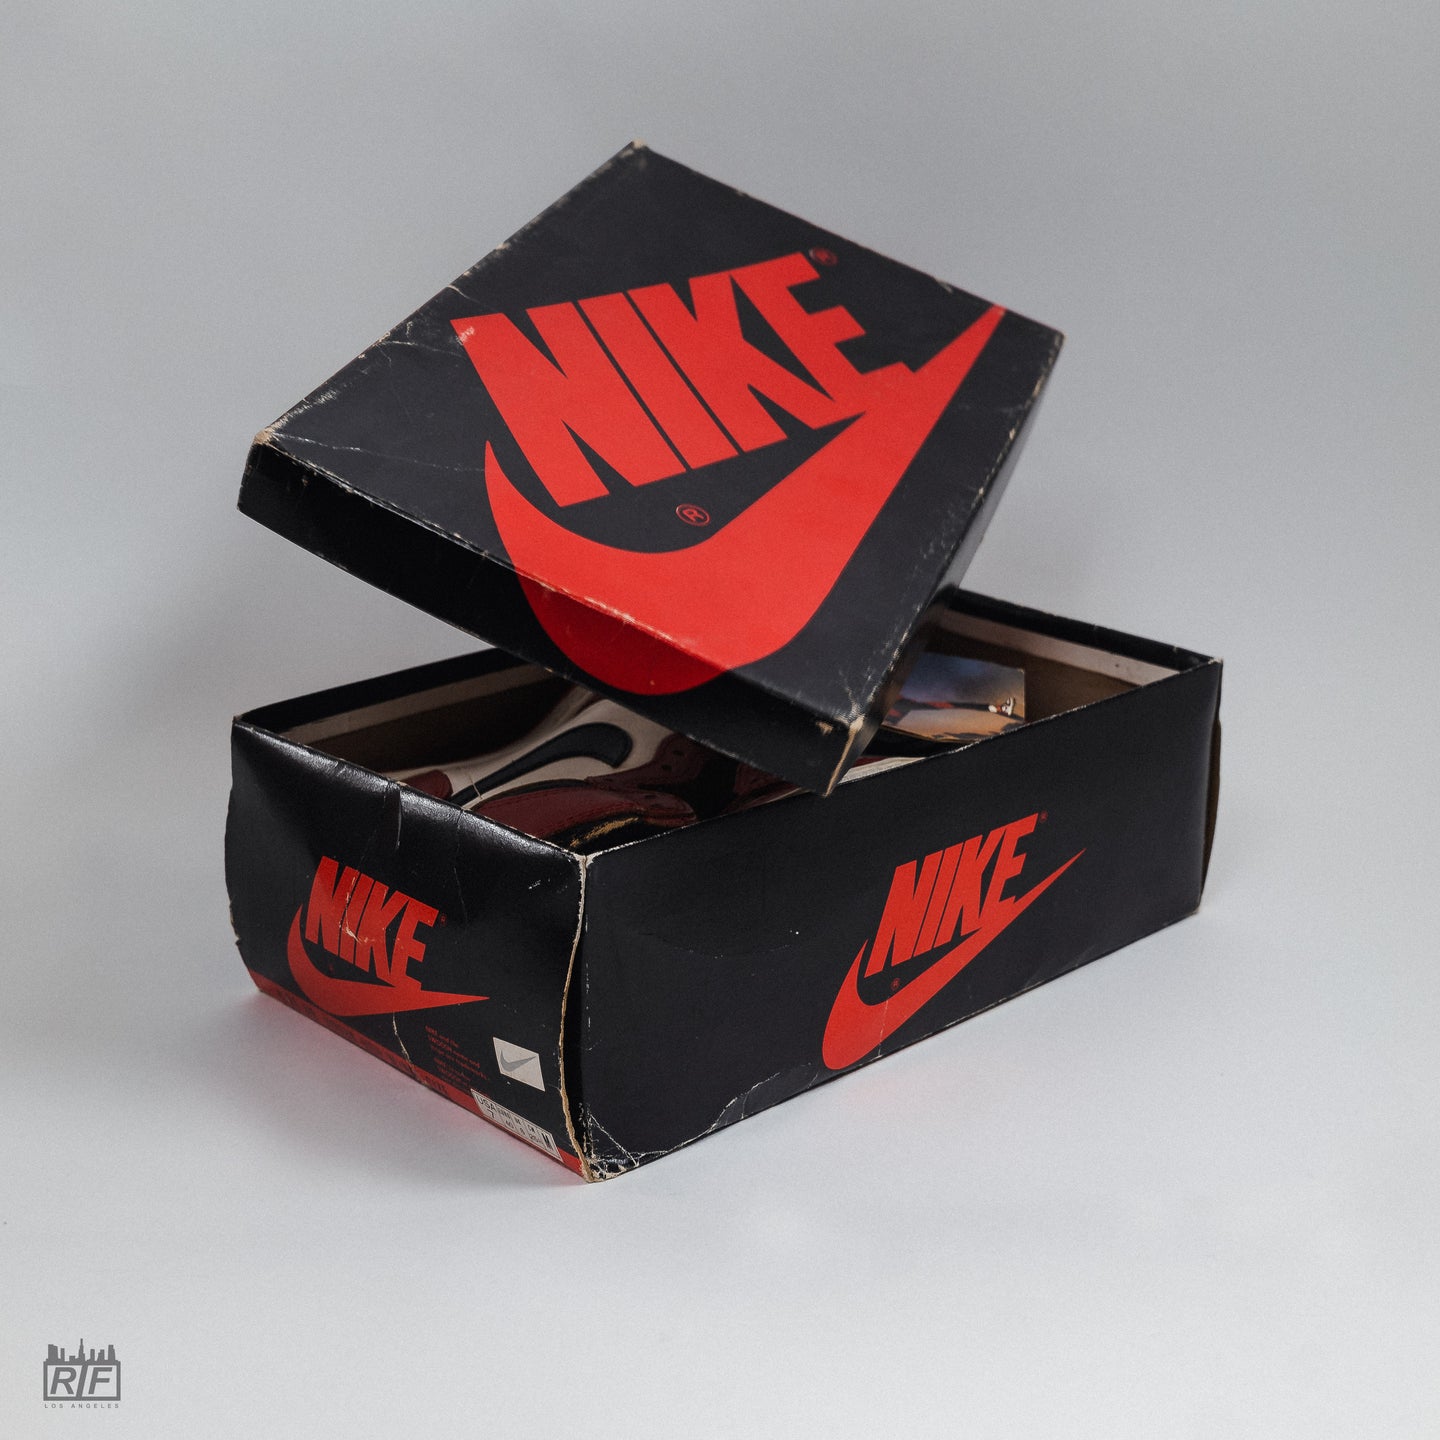 O clipe de calcanhar de TPU melhora o look original da Nike com maior estabilidade